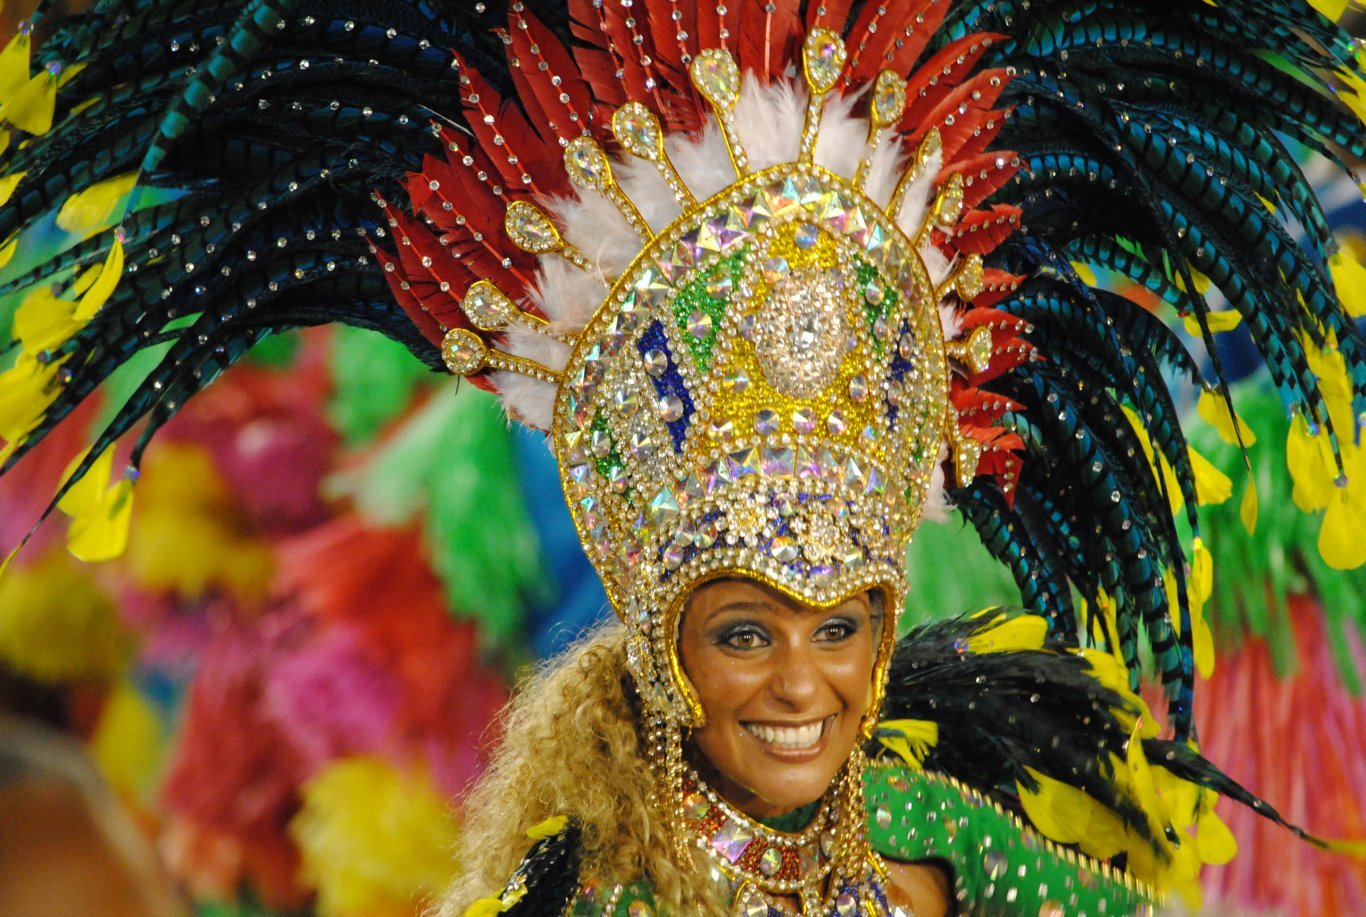 Carnival parade in Rio de Janeiro - Portela samba school